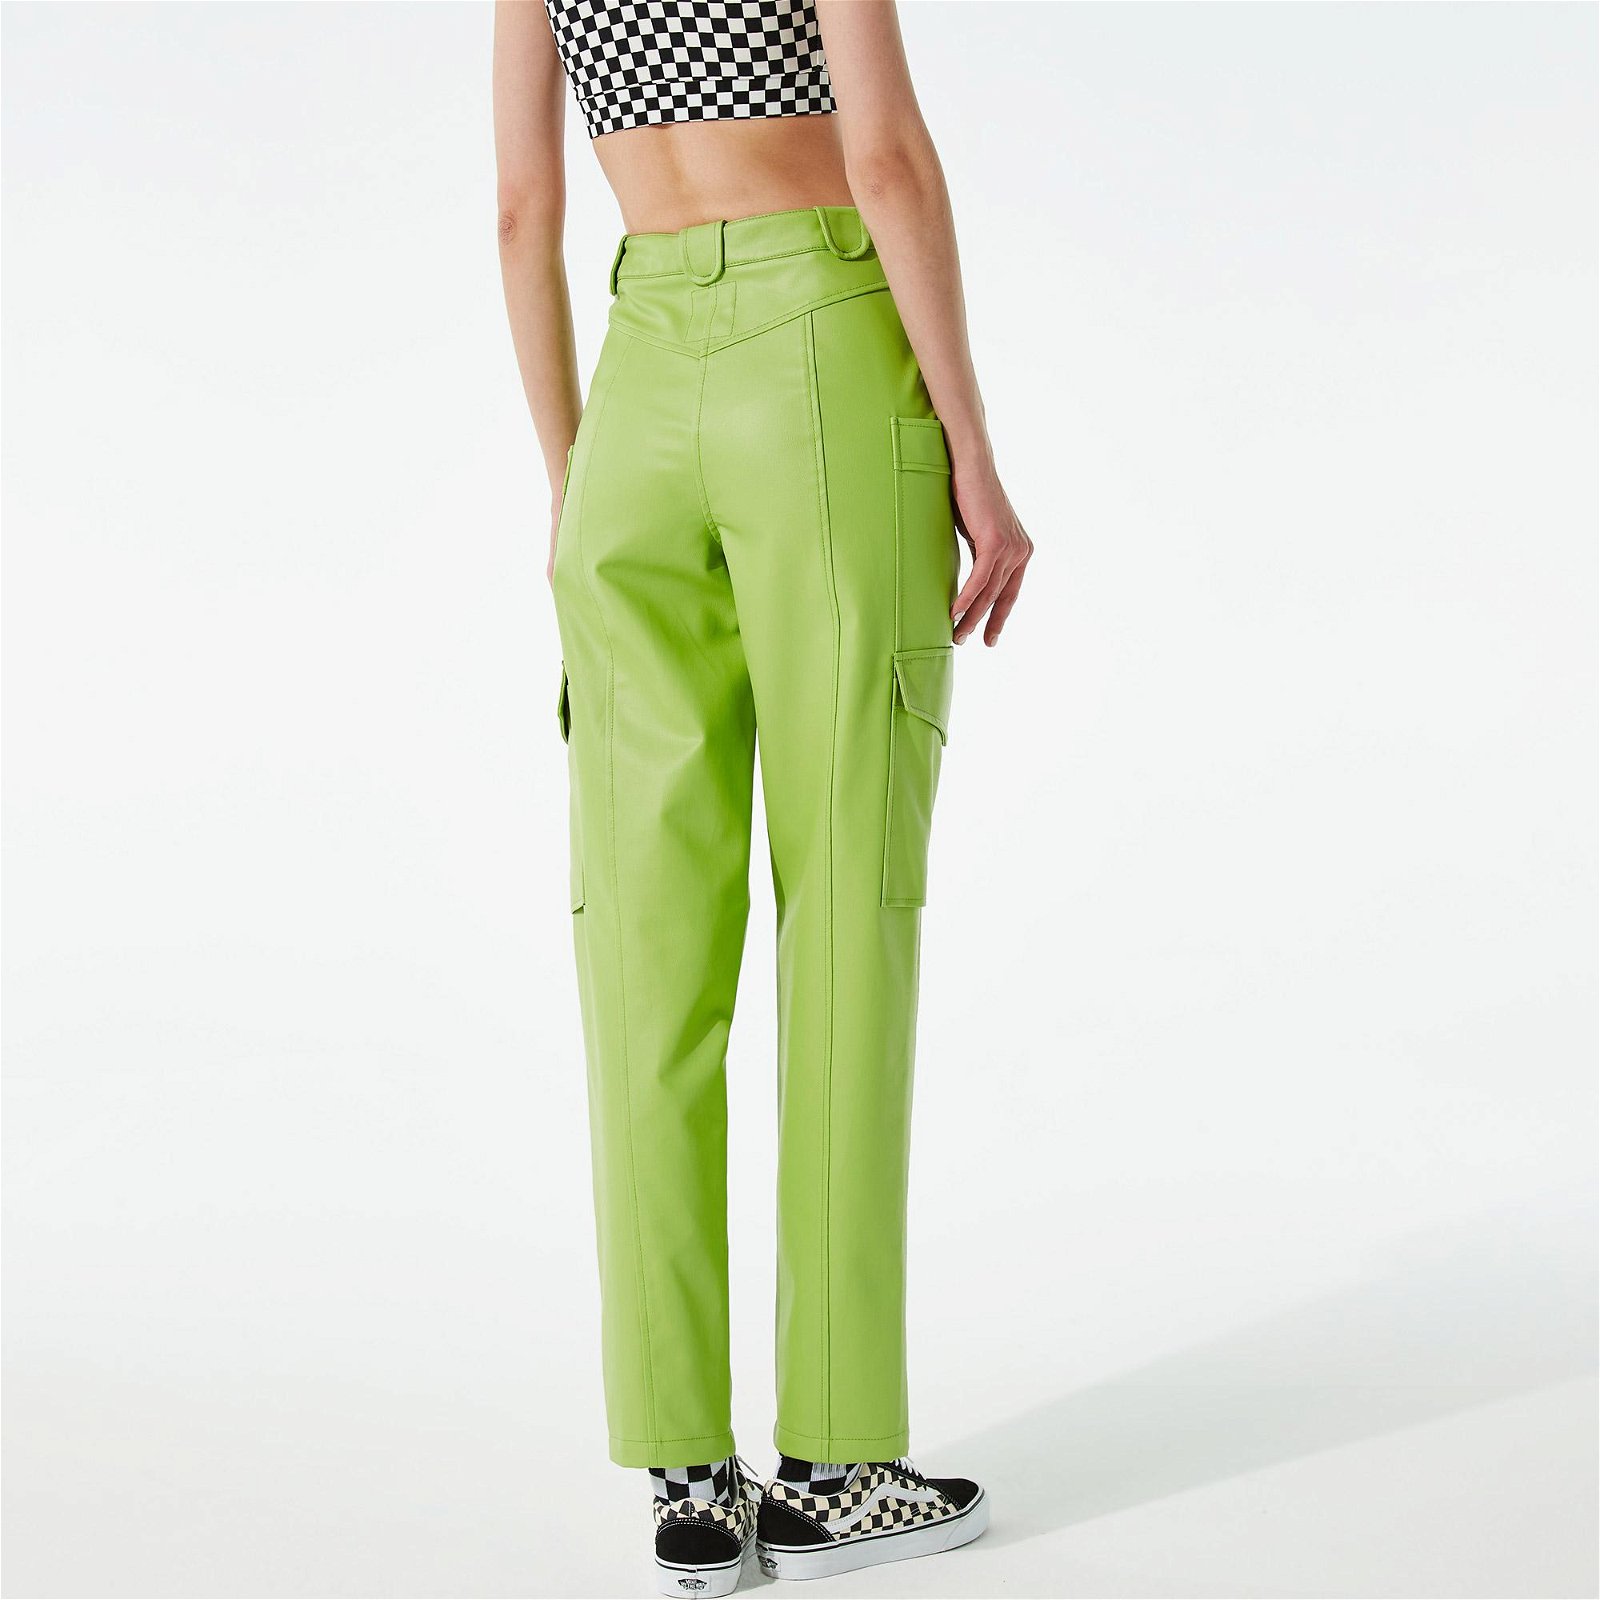 COLOREVE Green Leather Kadın Yeşil Kargo Pantolon